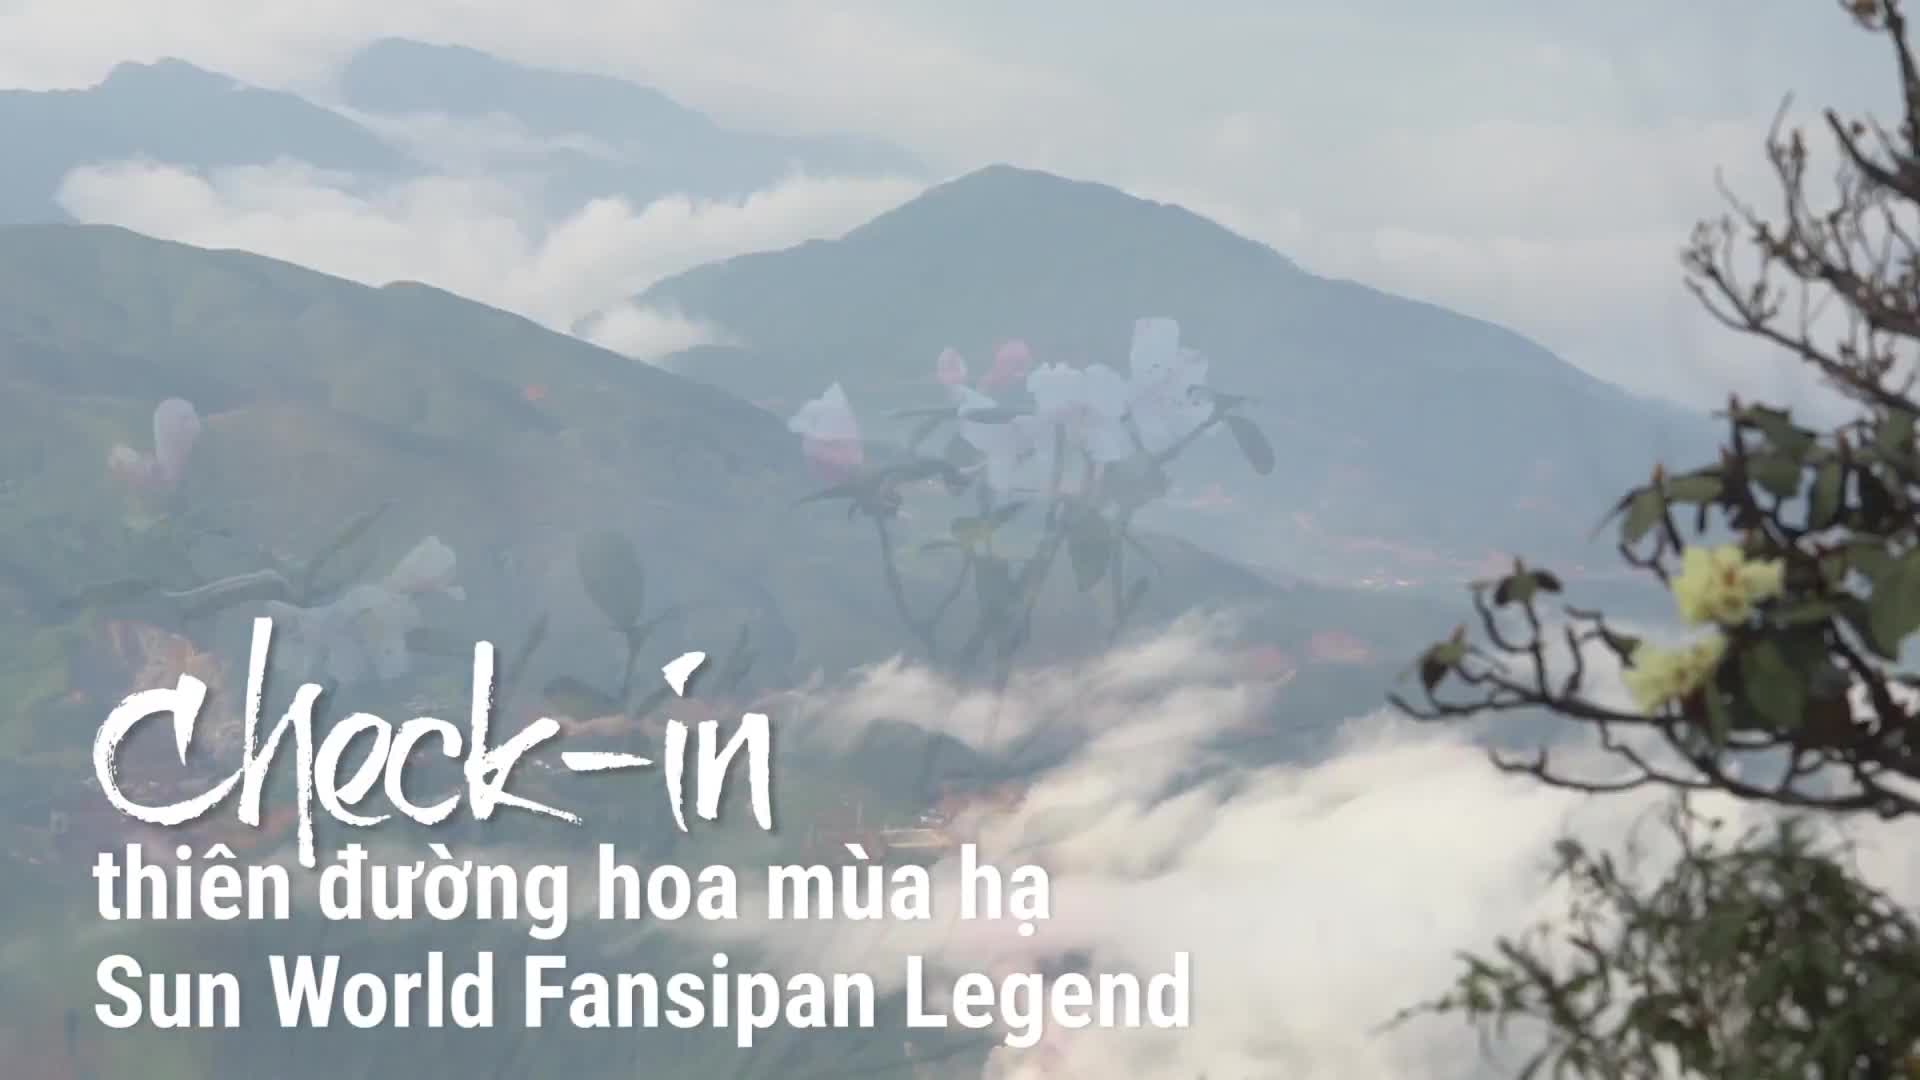 Video: Hẹn hò tại thung lũng hoa dưới chân núi Fansipan